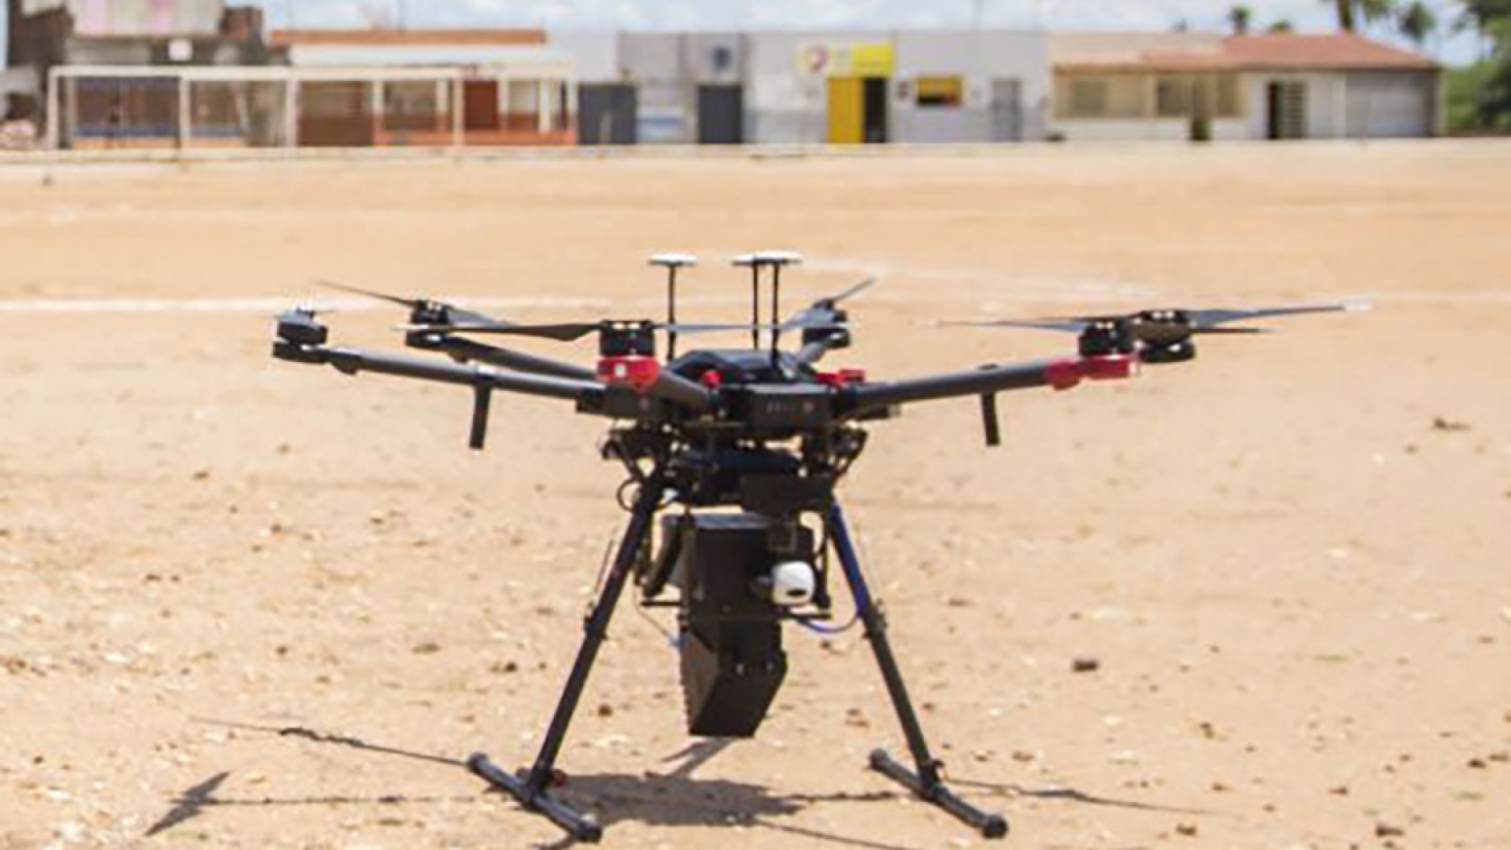 Les drones permettent de réduire les coûts d’utilisation de la méthode de l'insecte stérile (SIT) pour lutter contre la propagation de maladies véhiculées par les insectes.